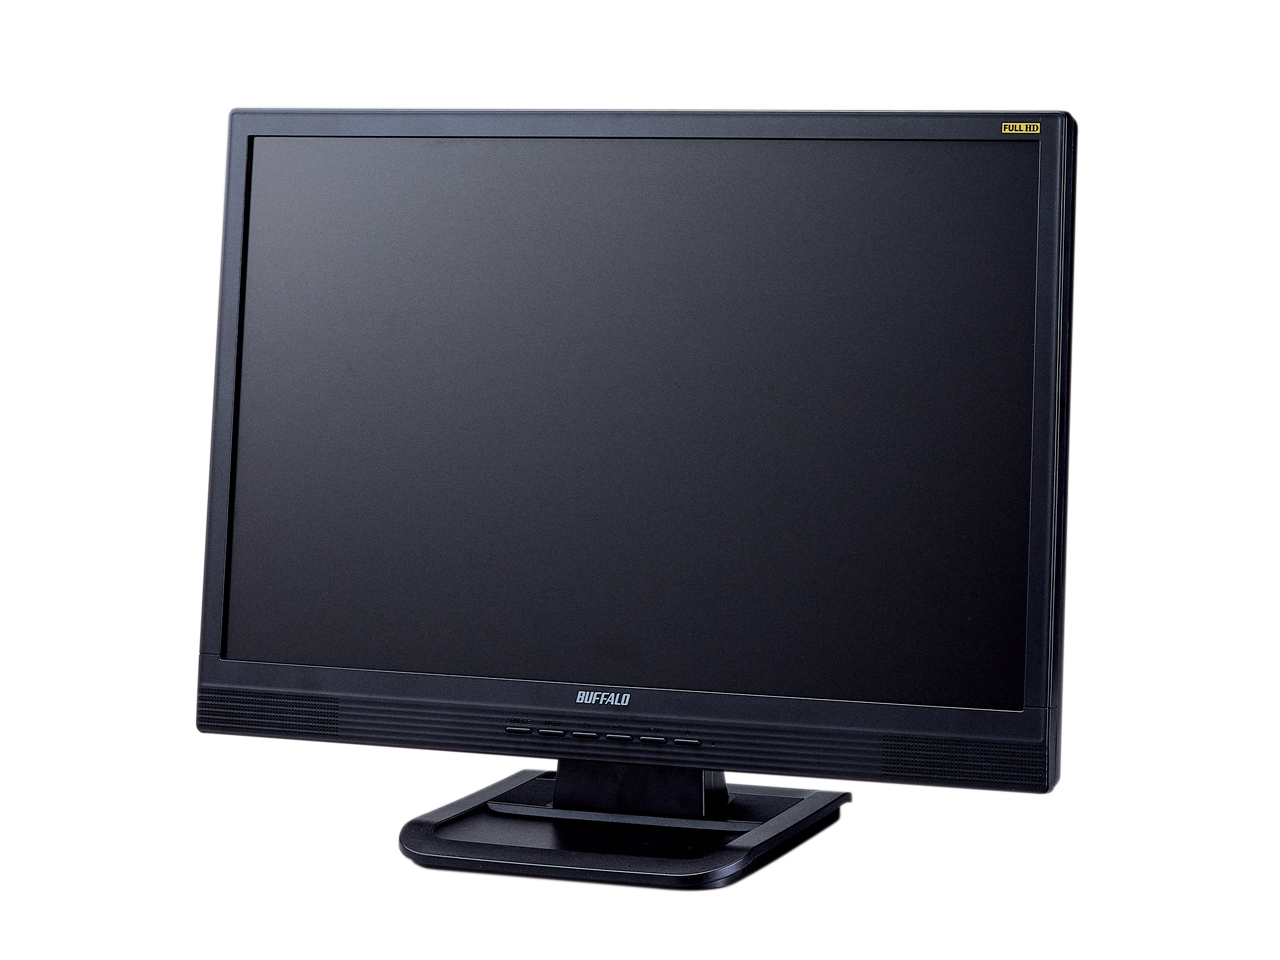 Immagine pubblicata in relazione al seguente contenuto: Buffalo annuncia un nuovo monitor LCD Full HD da 22-inch | Nome immagine: news8535_1.jpg